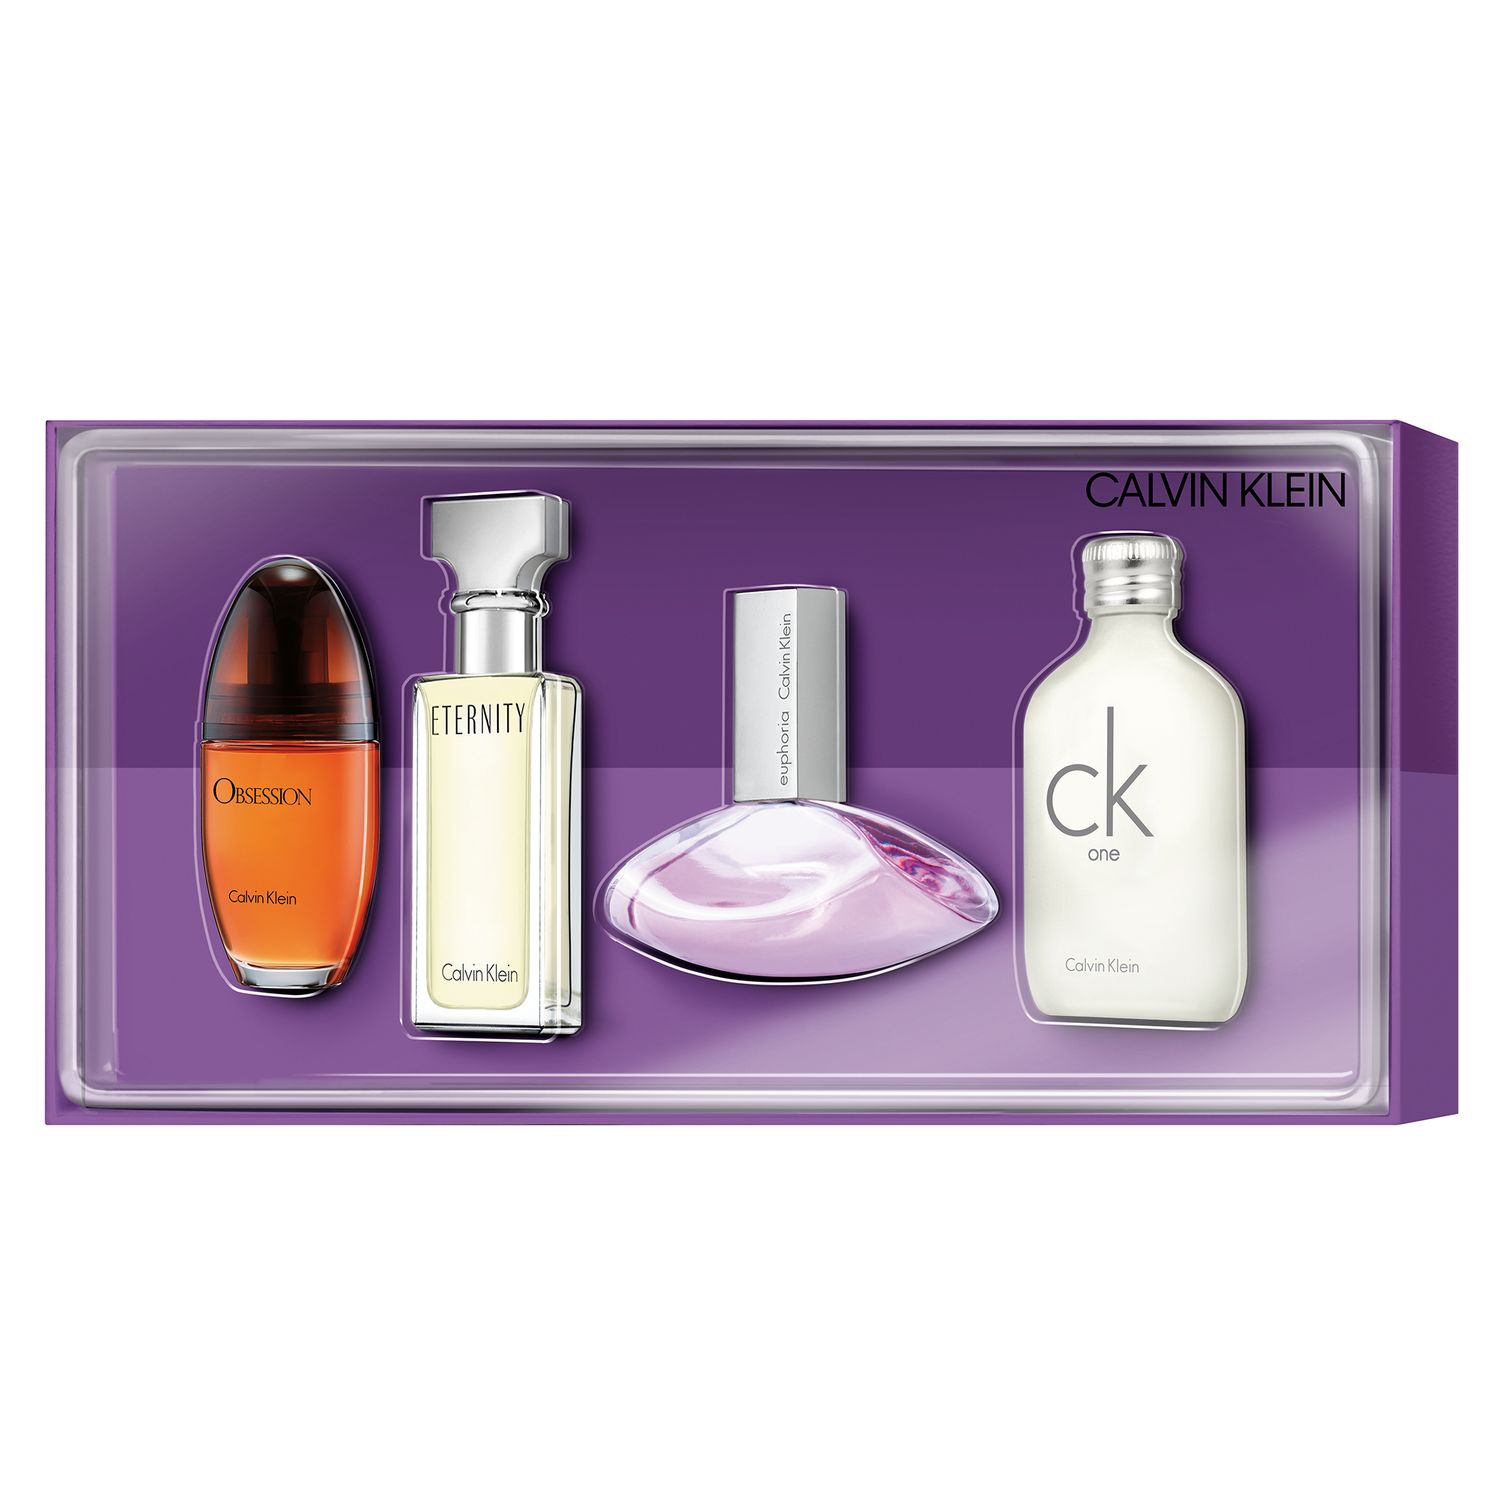 calvin klein perfume set